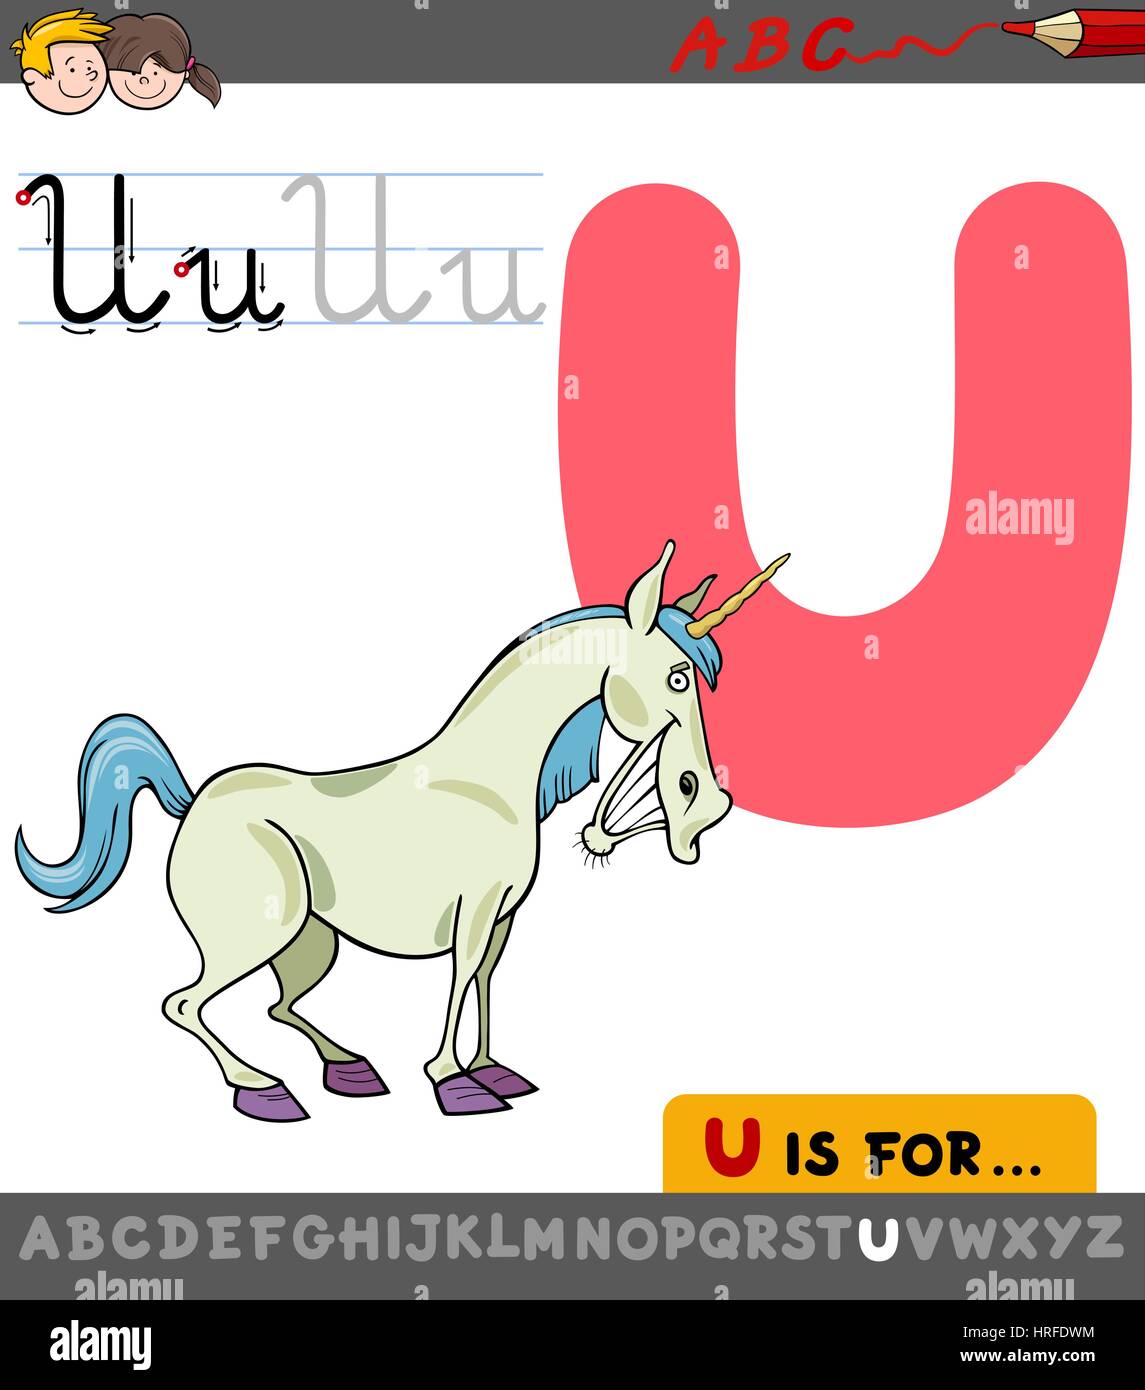 Pädagogische Cartoon Illustration der Buchstabe U vom Alphabet mit Einhorn Fantasy Charakter für Kinder Stock Vektor